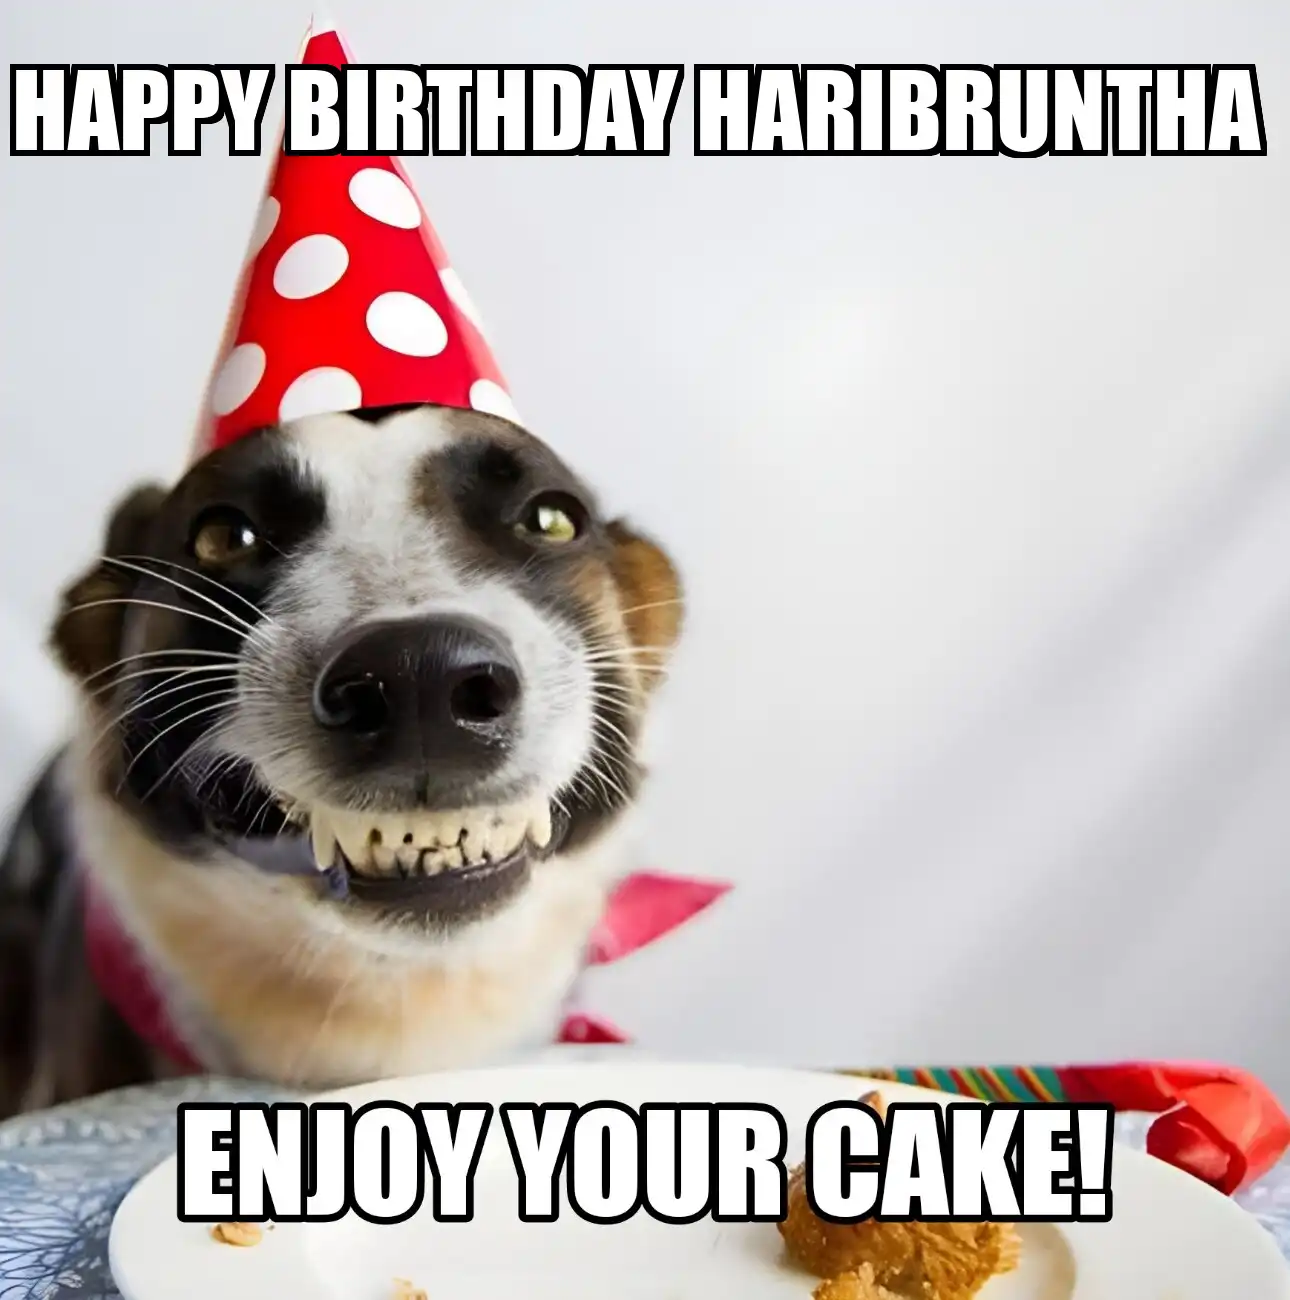 Happy Birthday Haribruntha Enjoy Your Cake Dog Meme